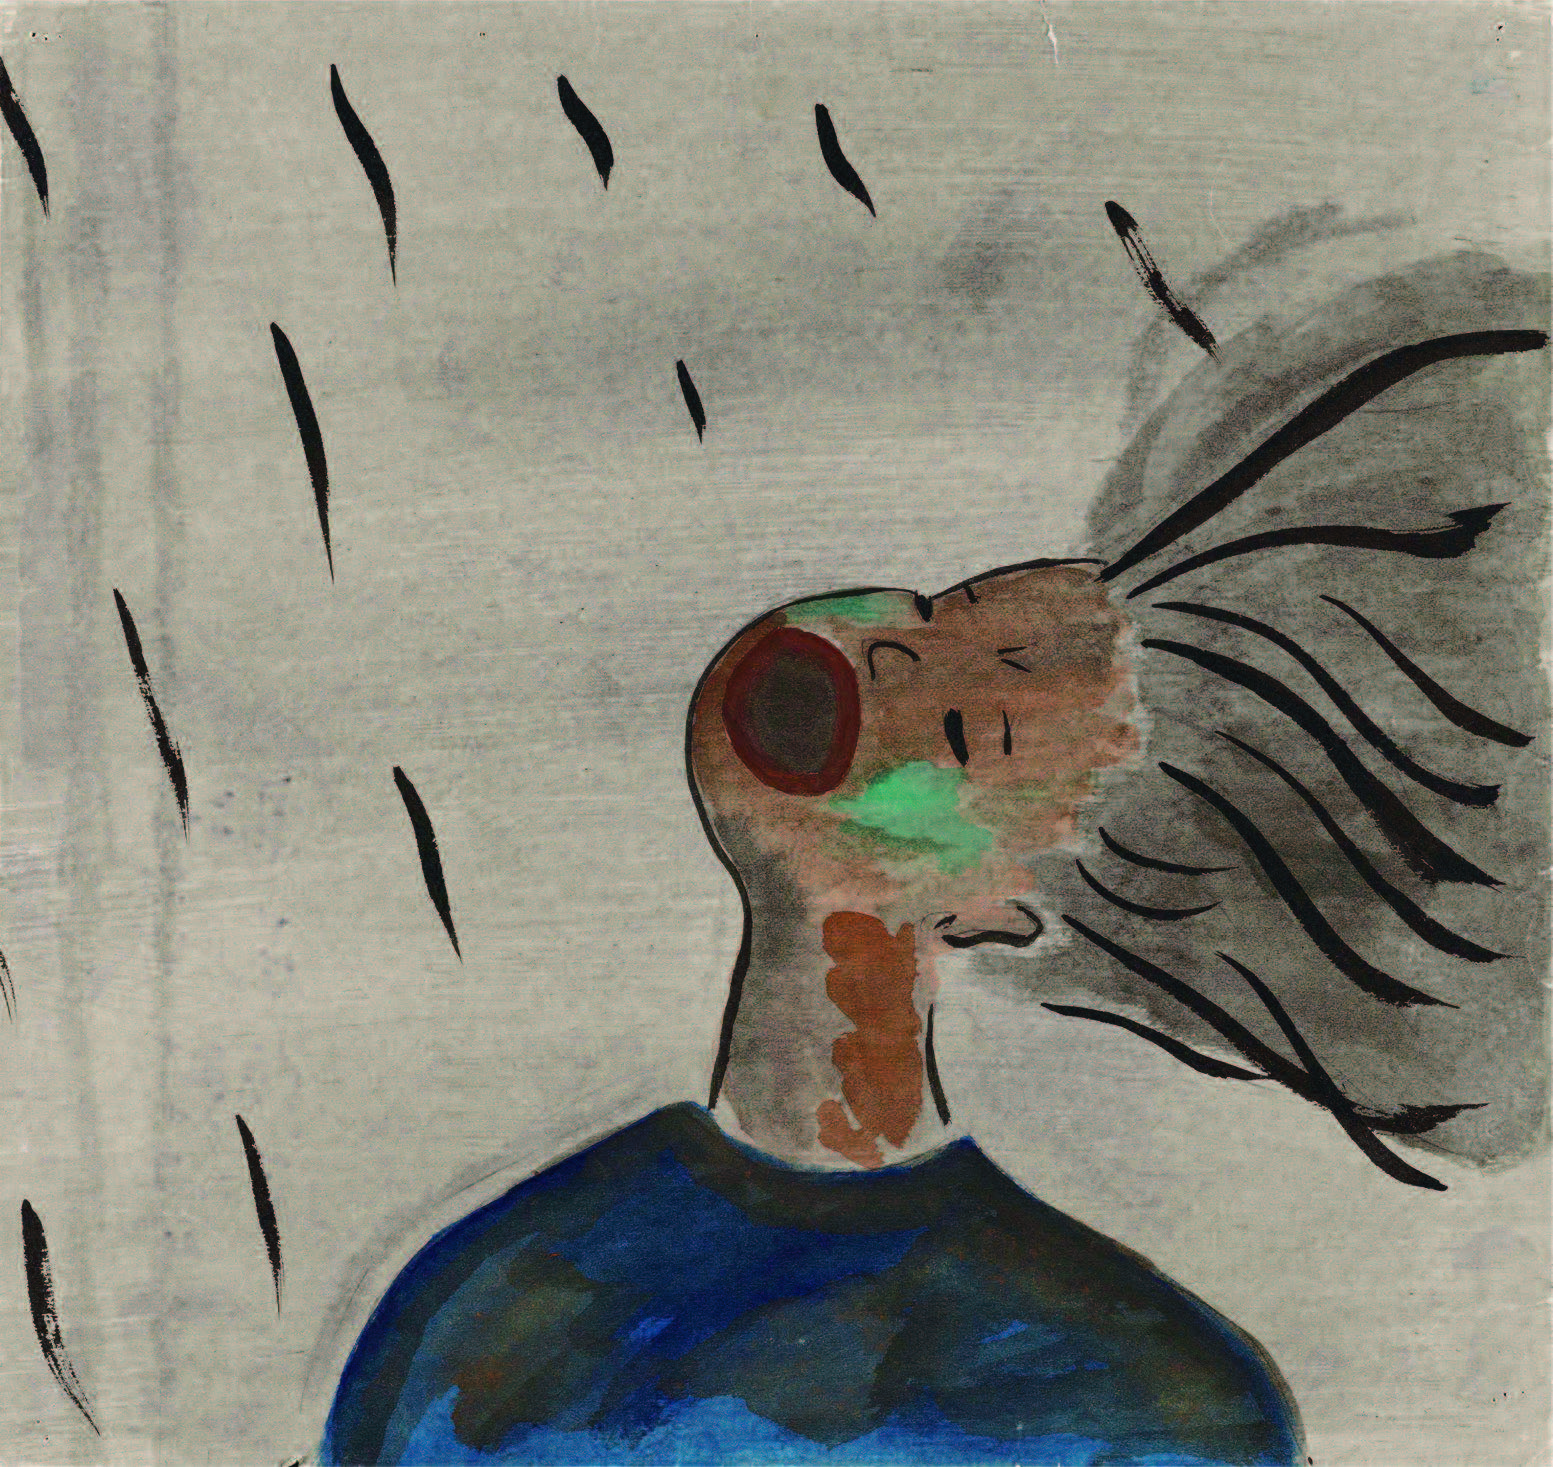 広島平和記念資料館 展示を見る 常設展示 2 8月6日のヒロシマ 2 2 8月6日の惨状 2 2 6 黒い雨 2 2 6 1 喉が渇き黒い雨を口で受ける女性